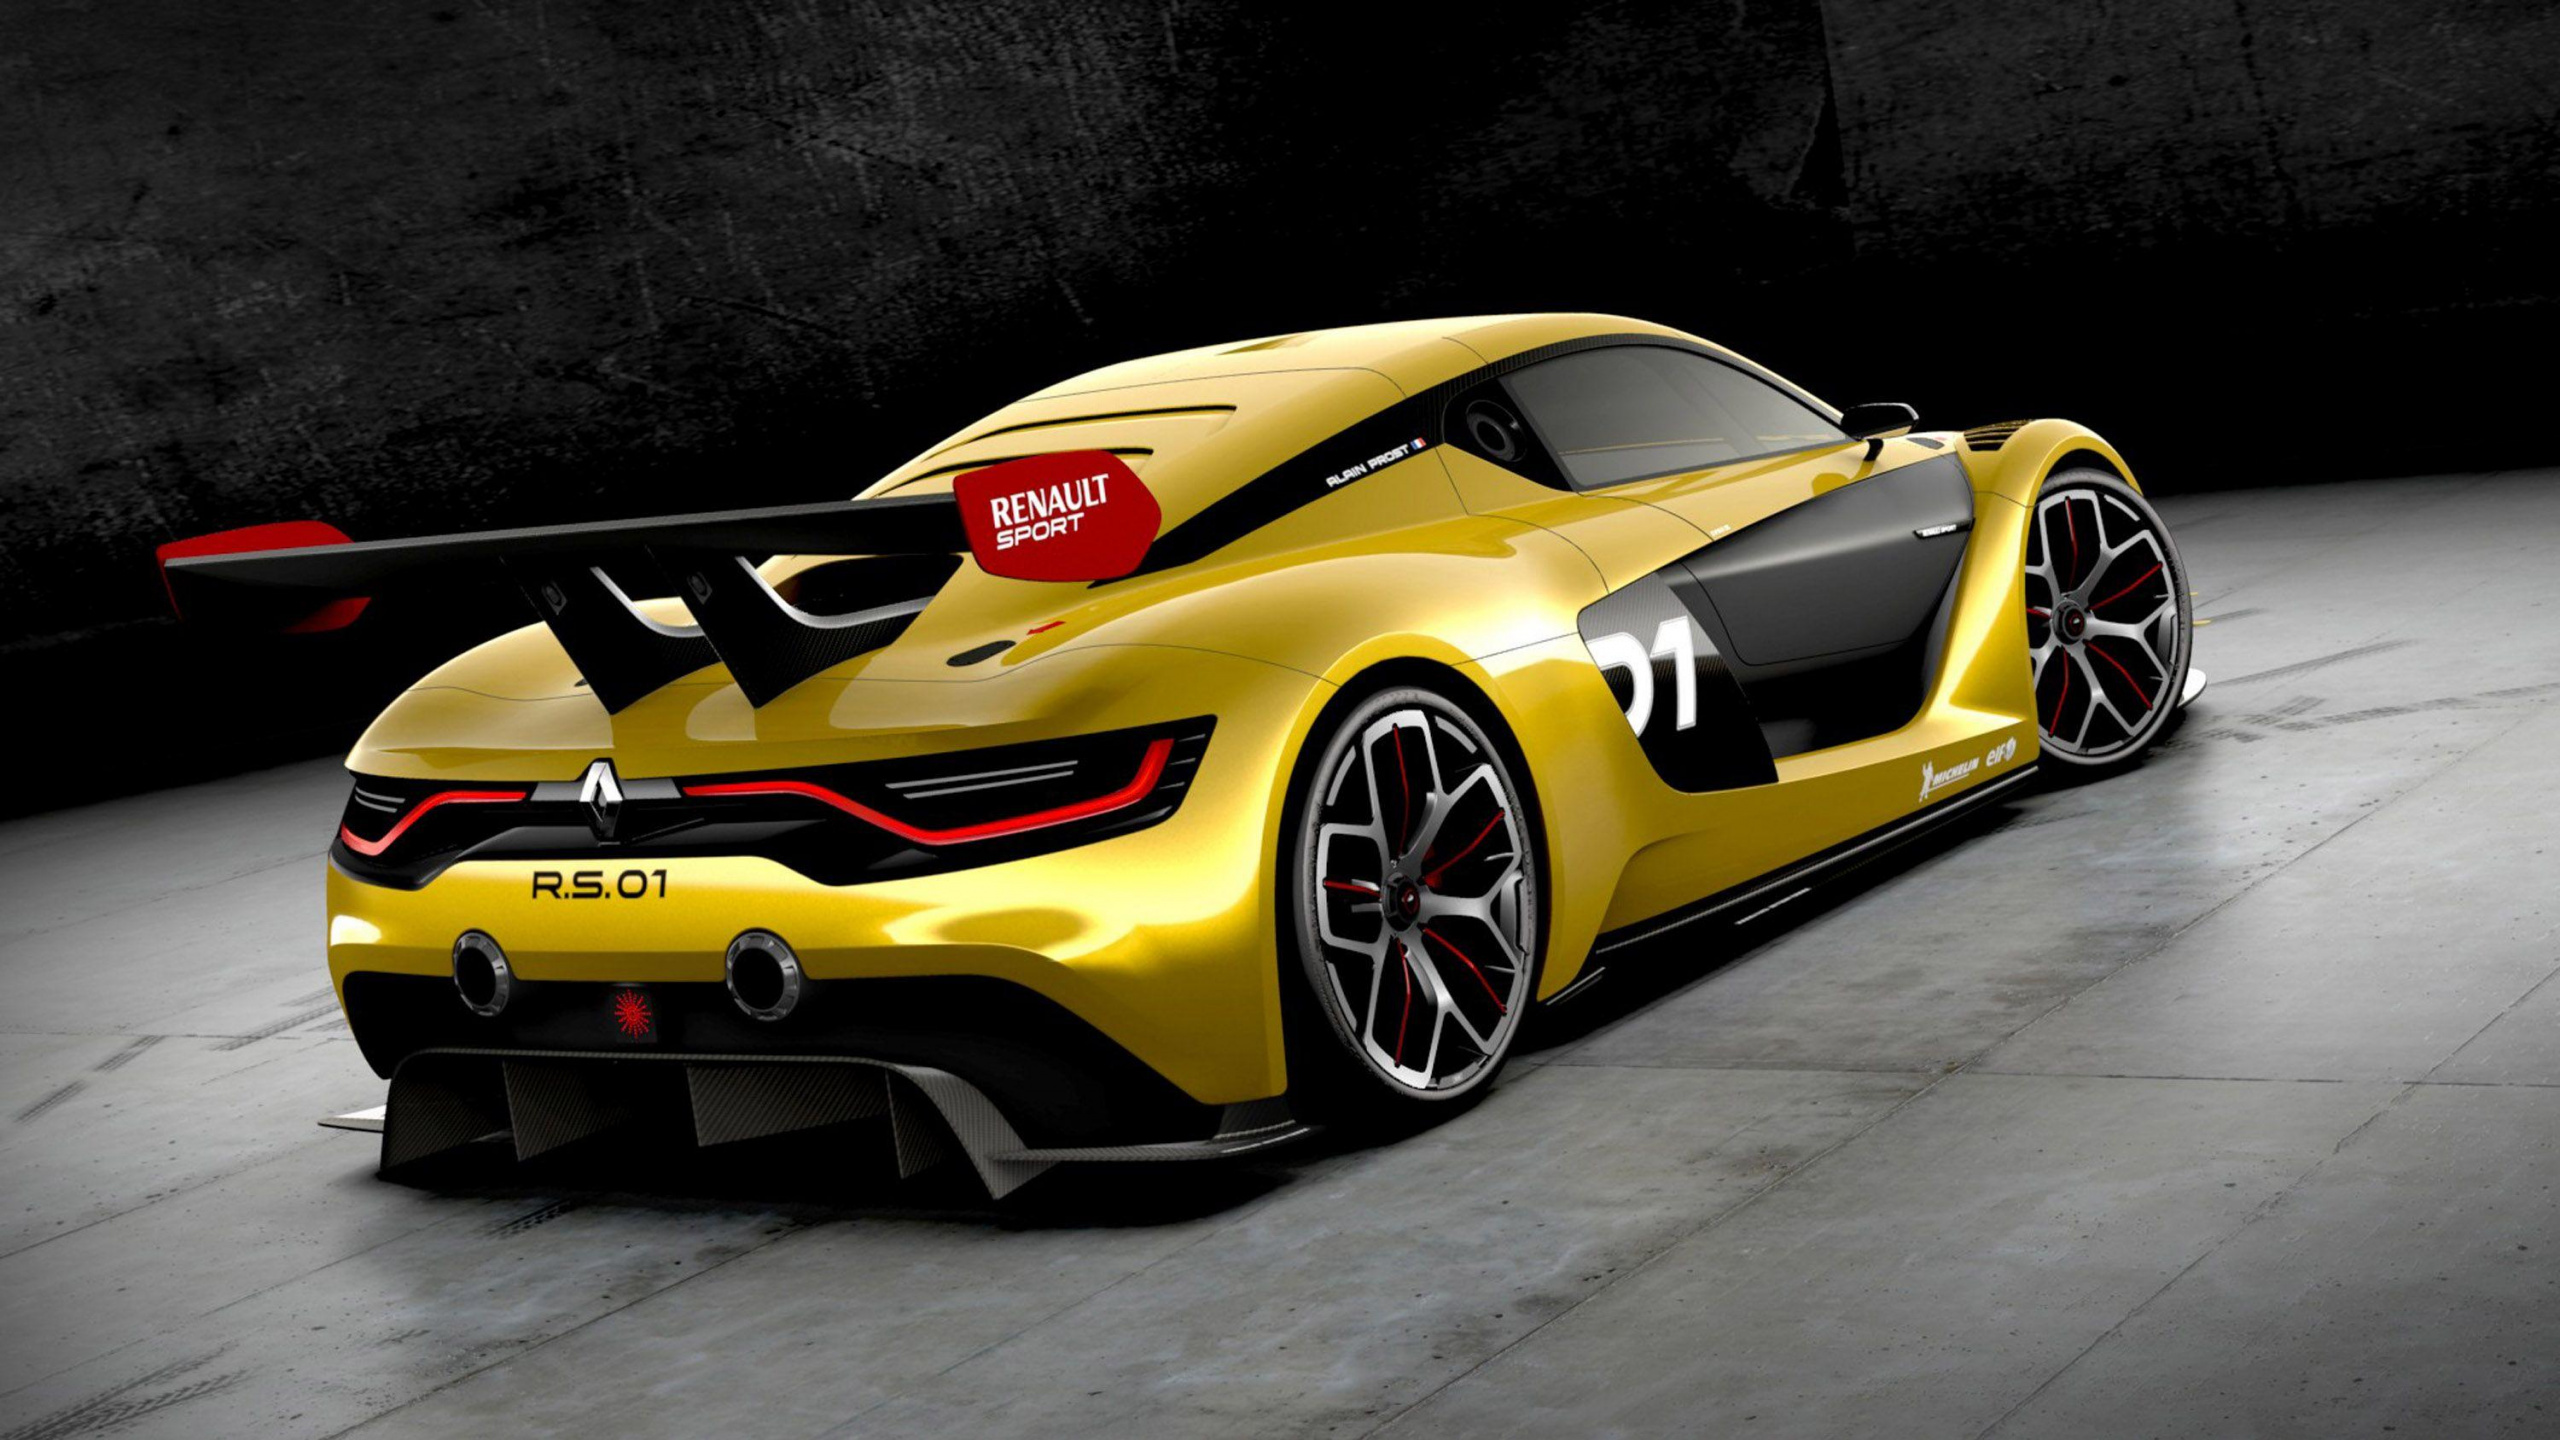 雷诺 RS 01, 雷诺, 雷诺的运动, 汽车赛车, 超级跑车 壁纸 2560x1440 允许